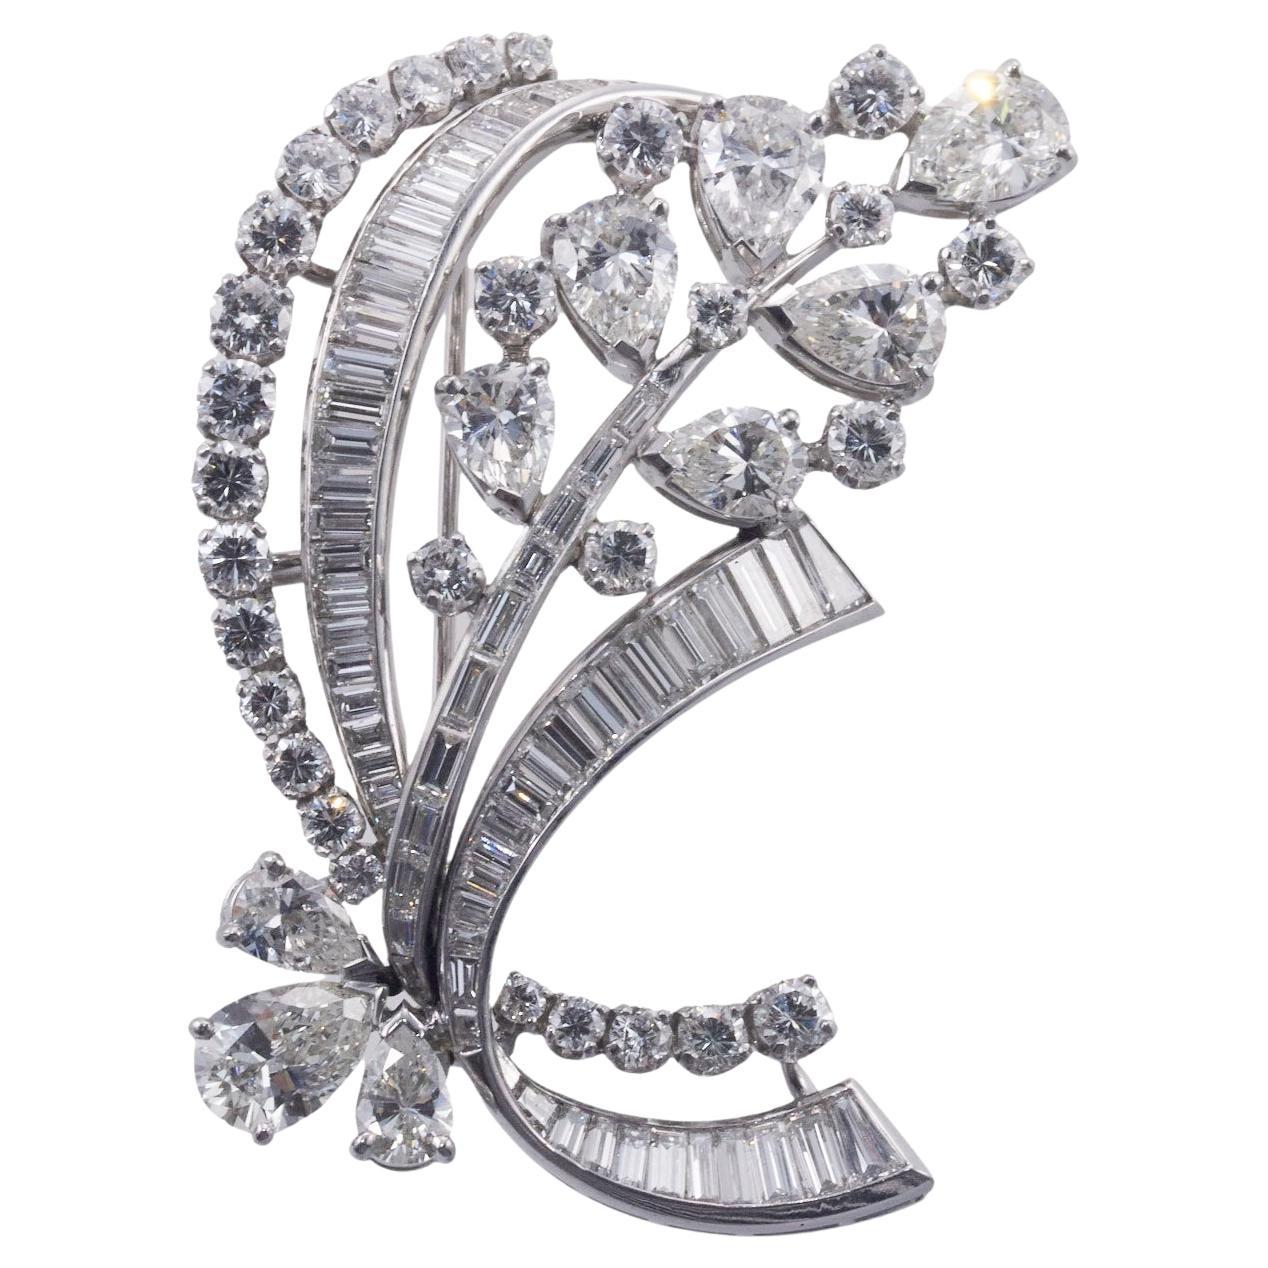 Midcentury Exquisite 14 Carat Diamond Platinum Brooch Pin